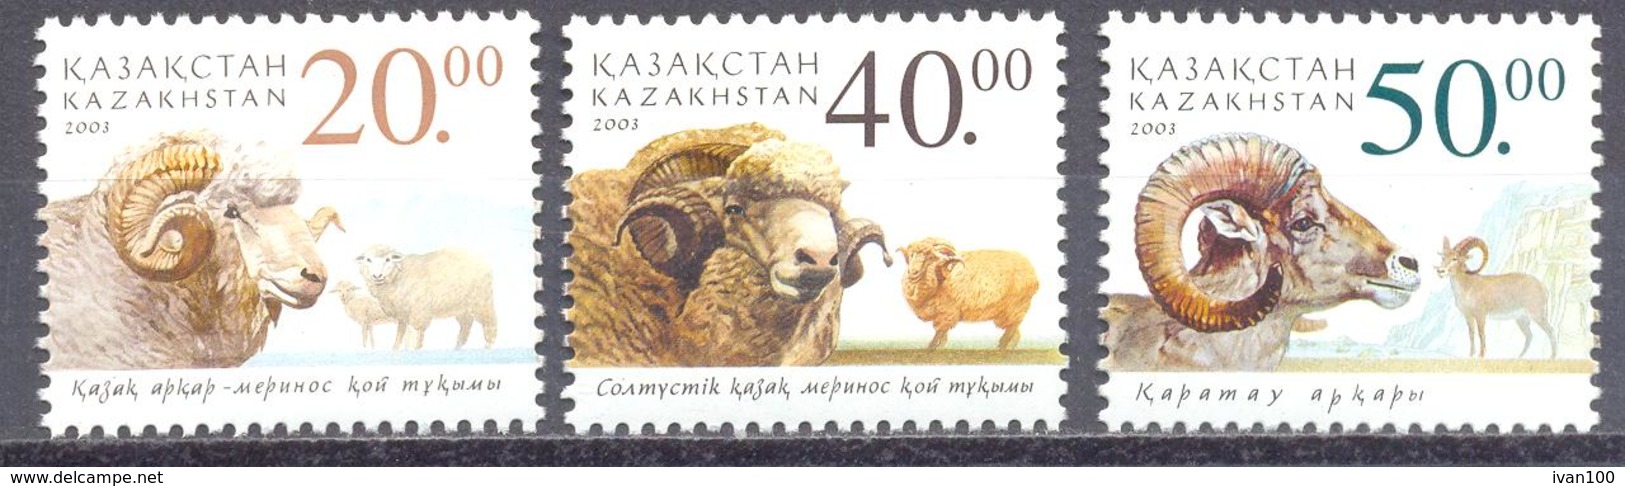 2003. Kazakhstan, Sheeps, 3v, Mint/** - Kazakhstan